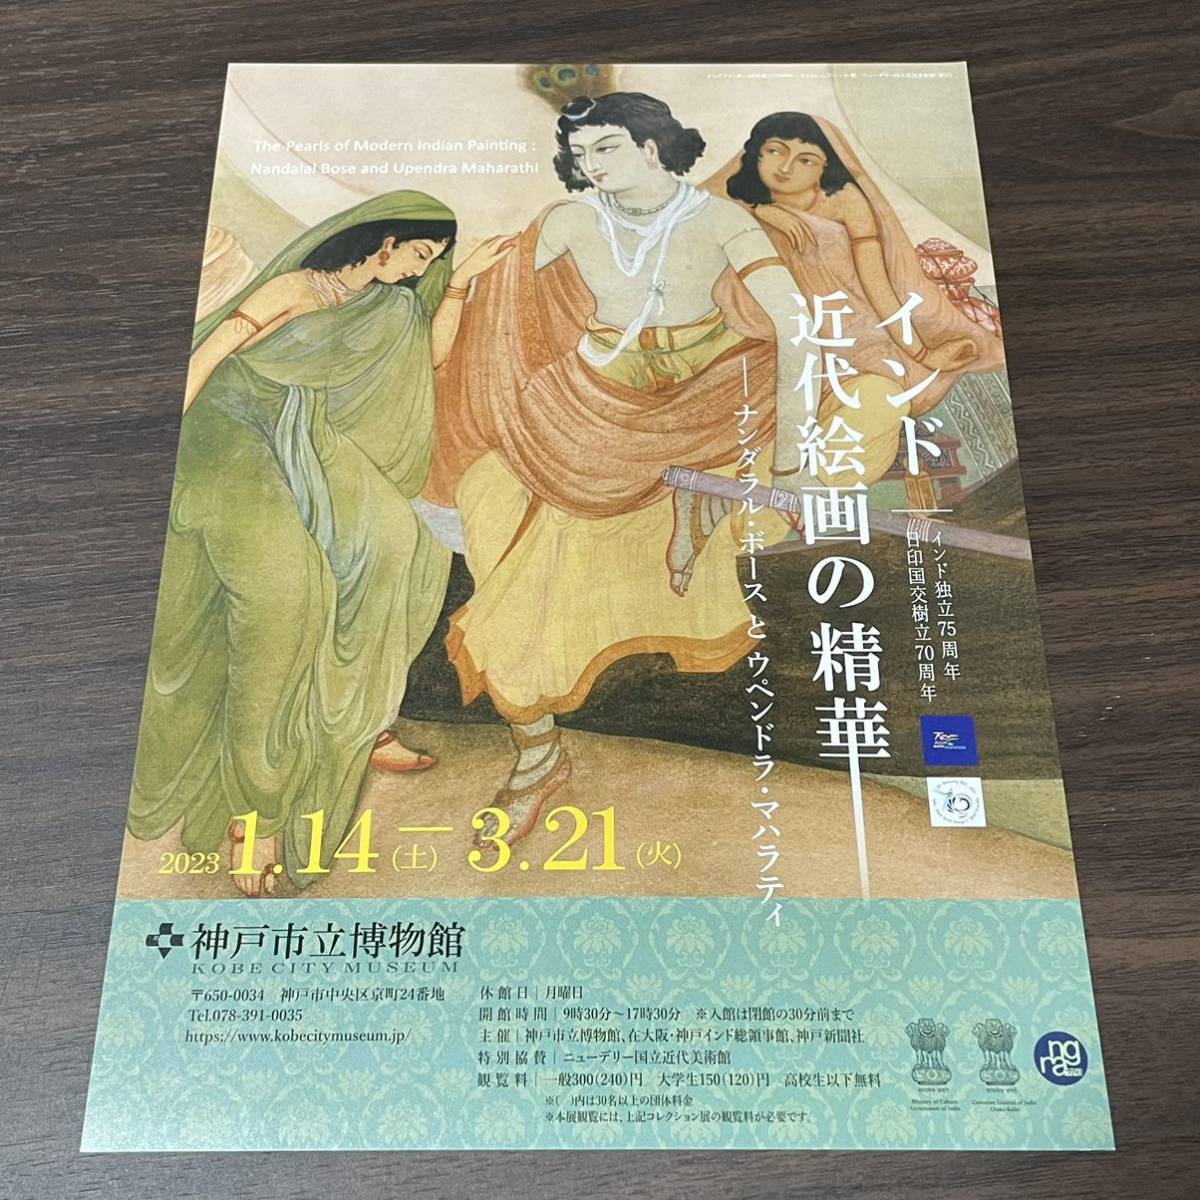 [Die Essenz der modernen indischen Malerei – Nandalal Bose und Upendra Maharati] Flyer zur Ausstellung des Kobe City Museum 2023, Drucksache, Flyer, Andere